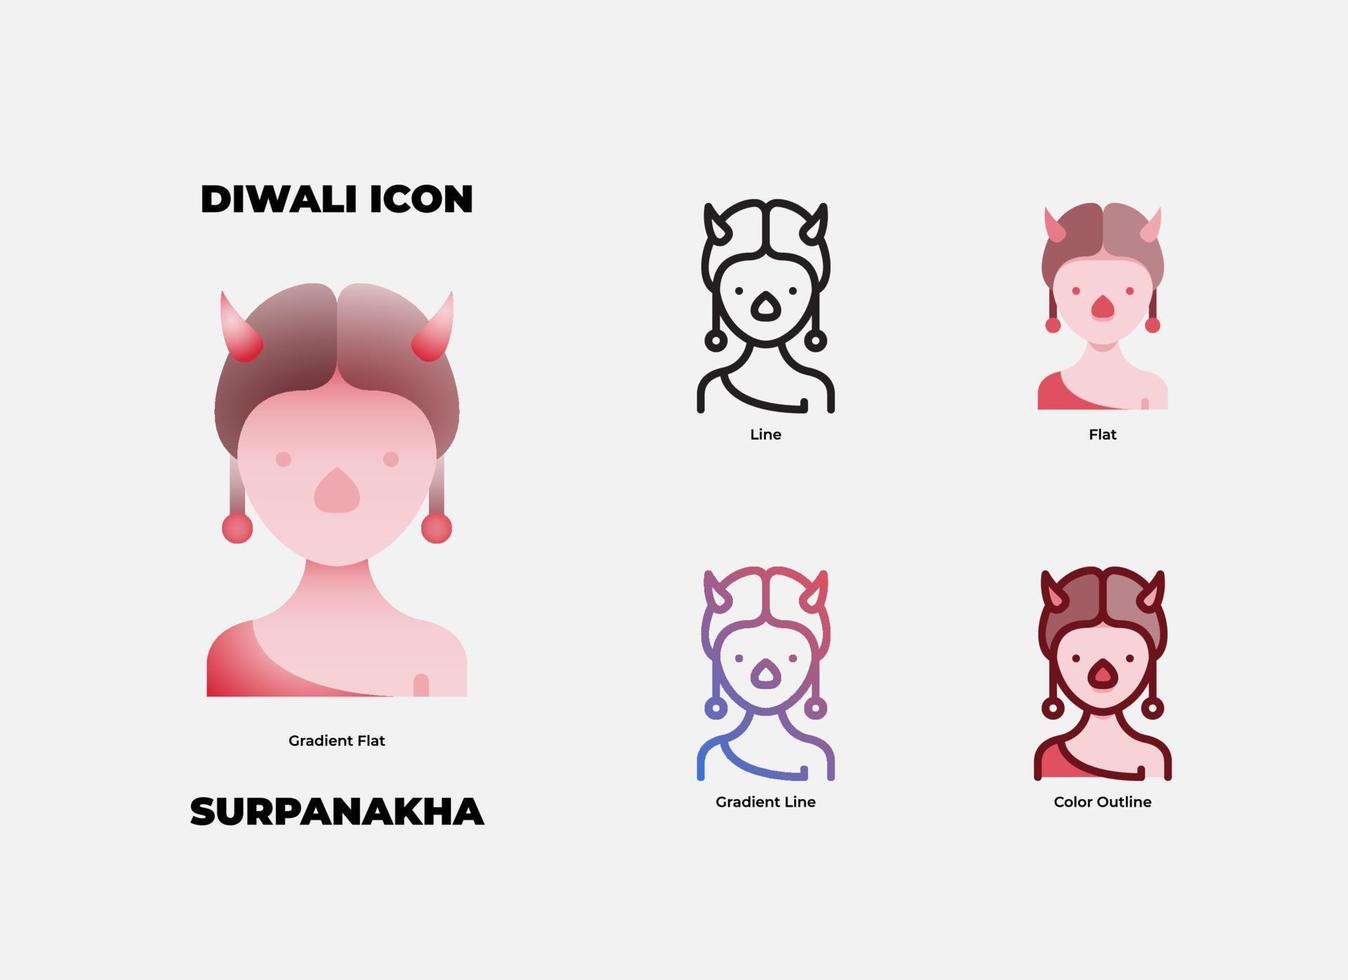 conjunto de iconos de diwali surpanakha. surpanakha es uno de los personajes malvados en la historia de diwali vector